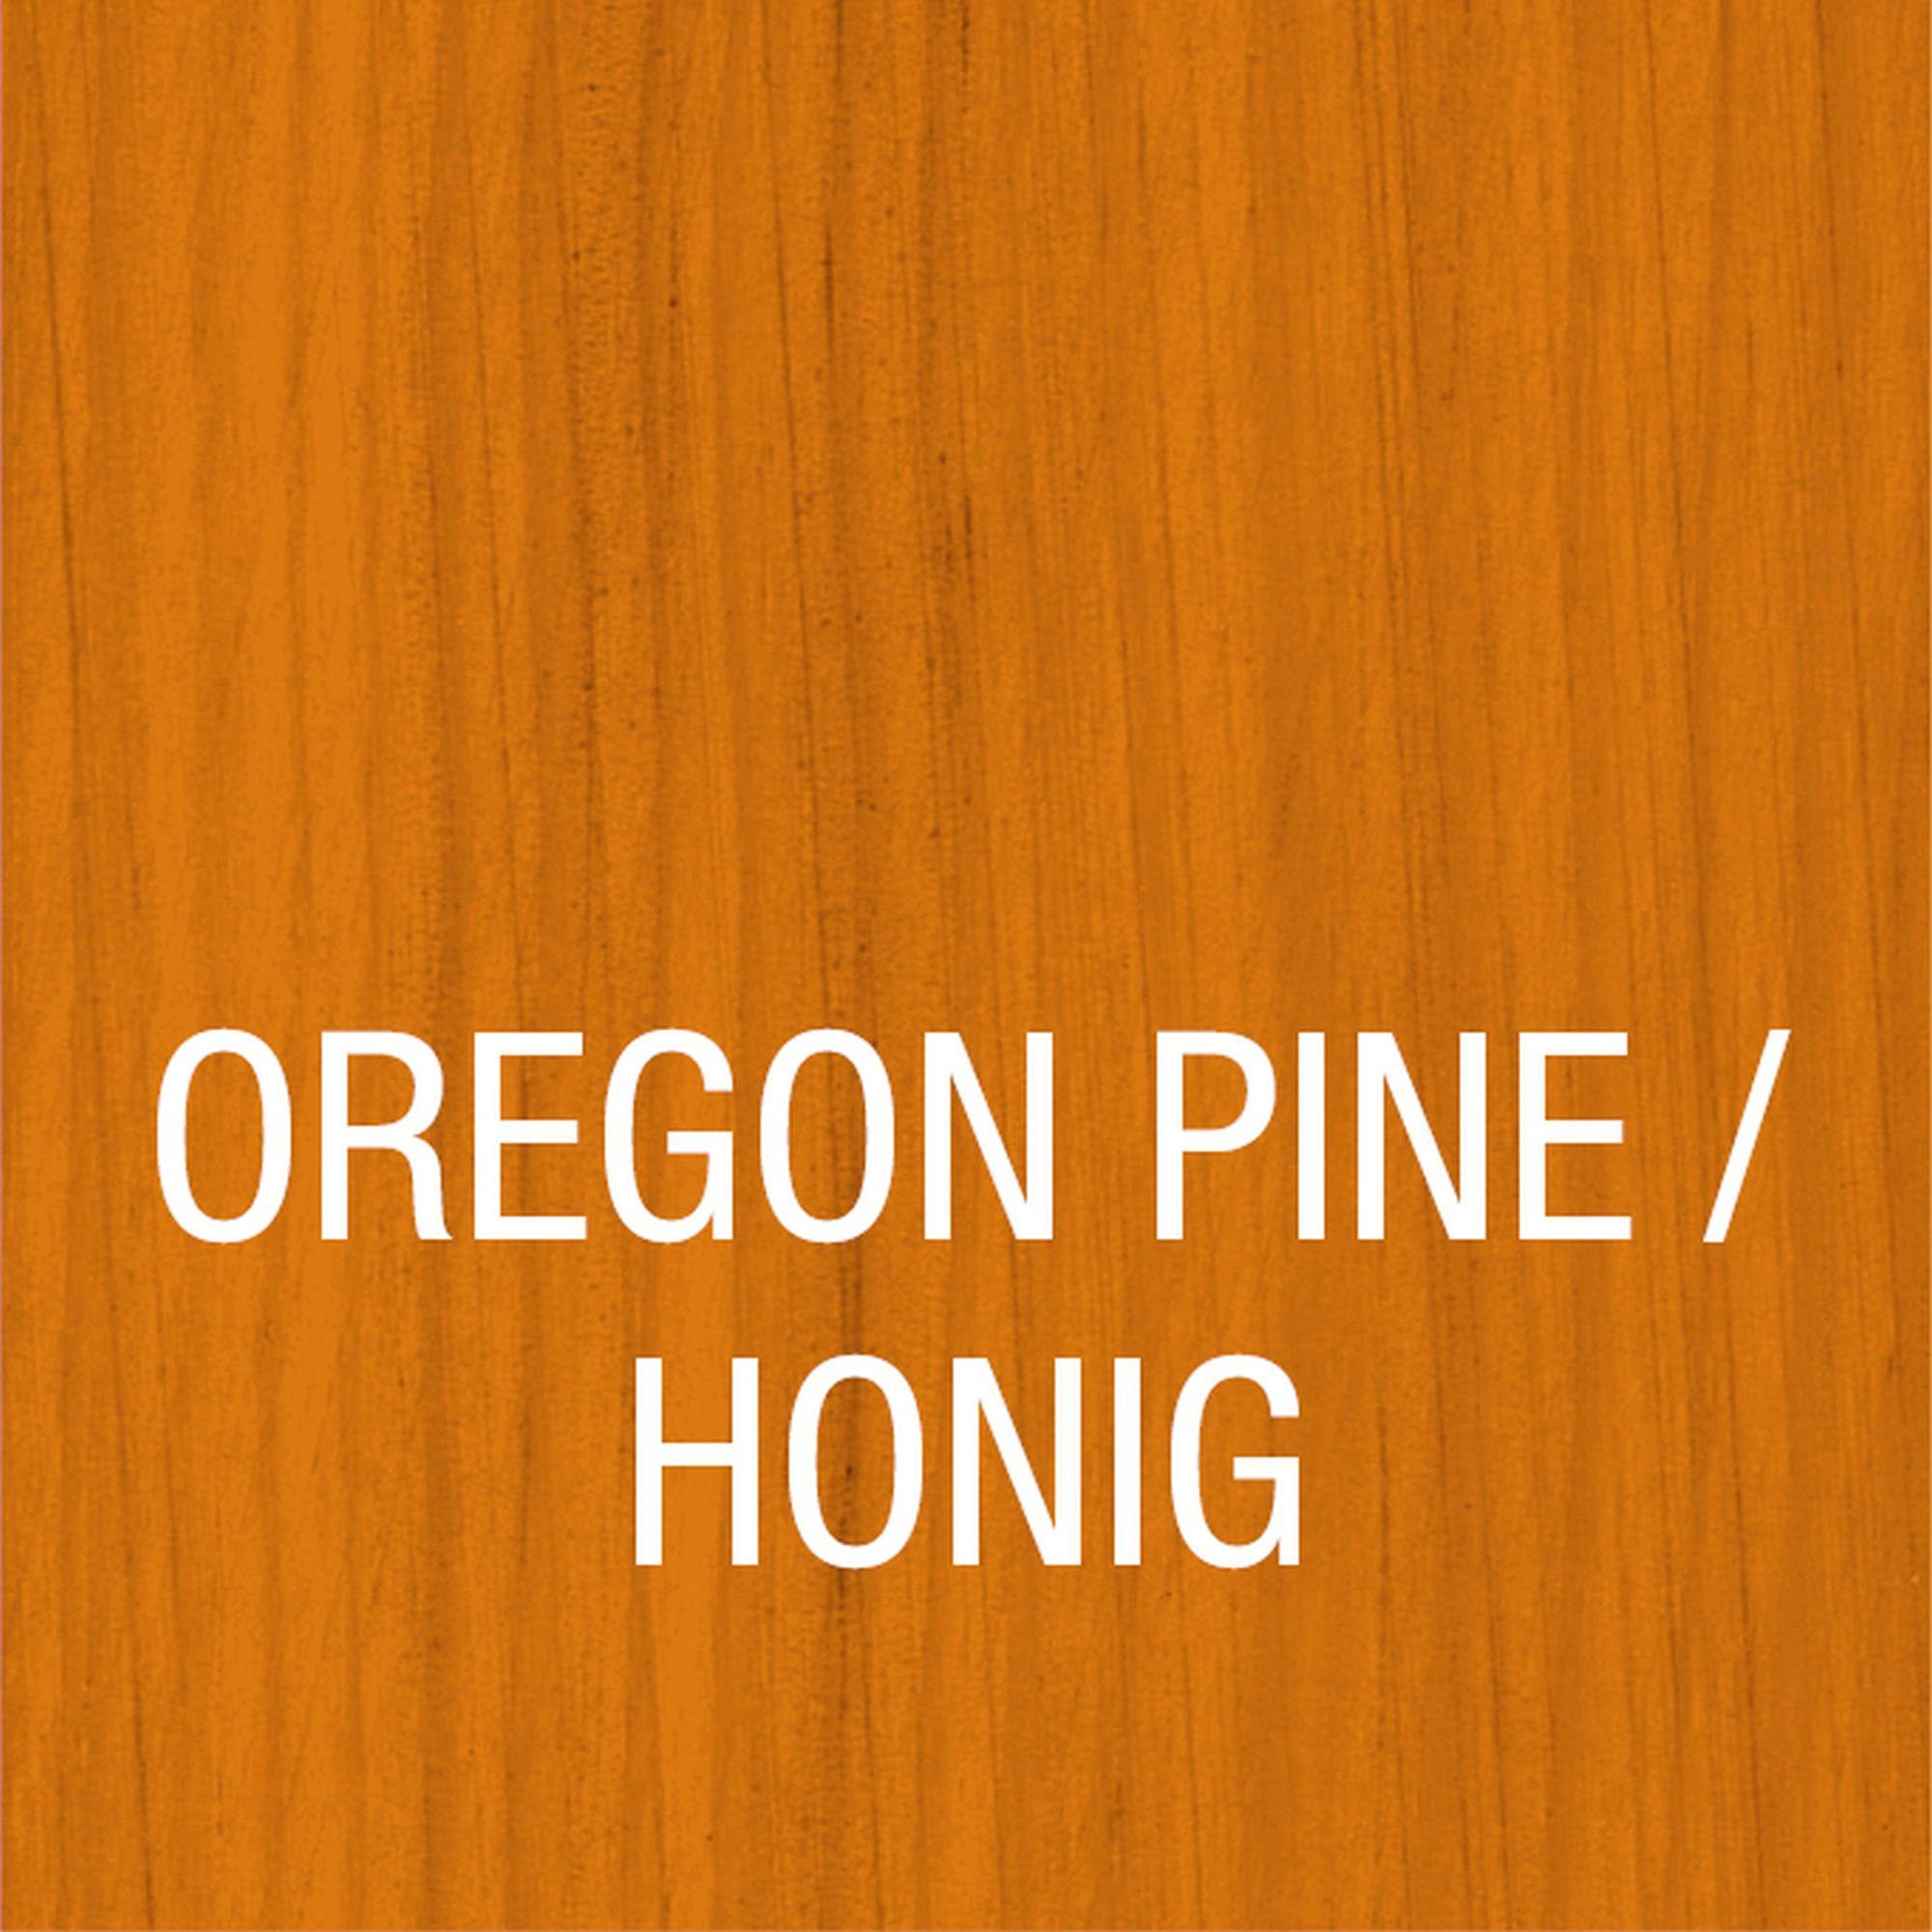 Bondex Holzschutzlasur Pine Honig Holzverkleidung, HOLZLASUR Oregon AUSSEN, atmungsaktiv, FÜR / Wetterschutz in versch. Farbtönen